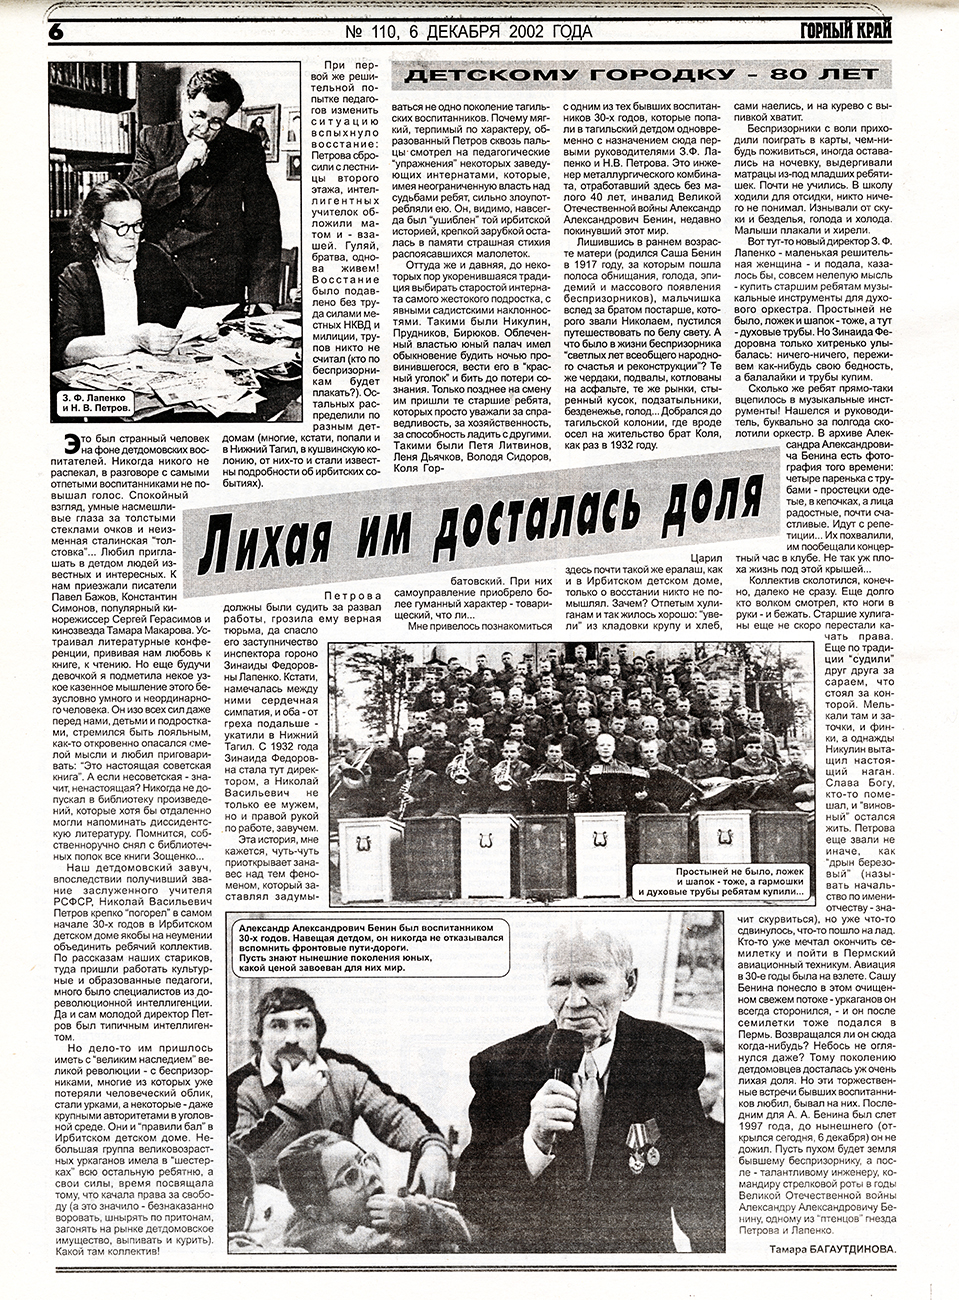 Газета «Горный край». – 2002. – 6 декабря (№ 110). – С. 6.